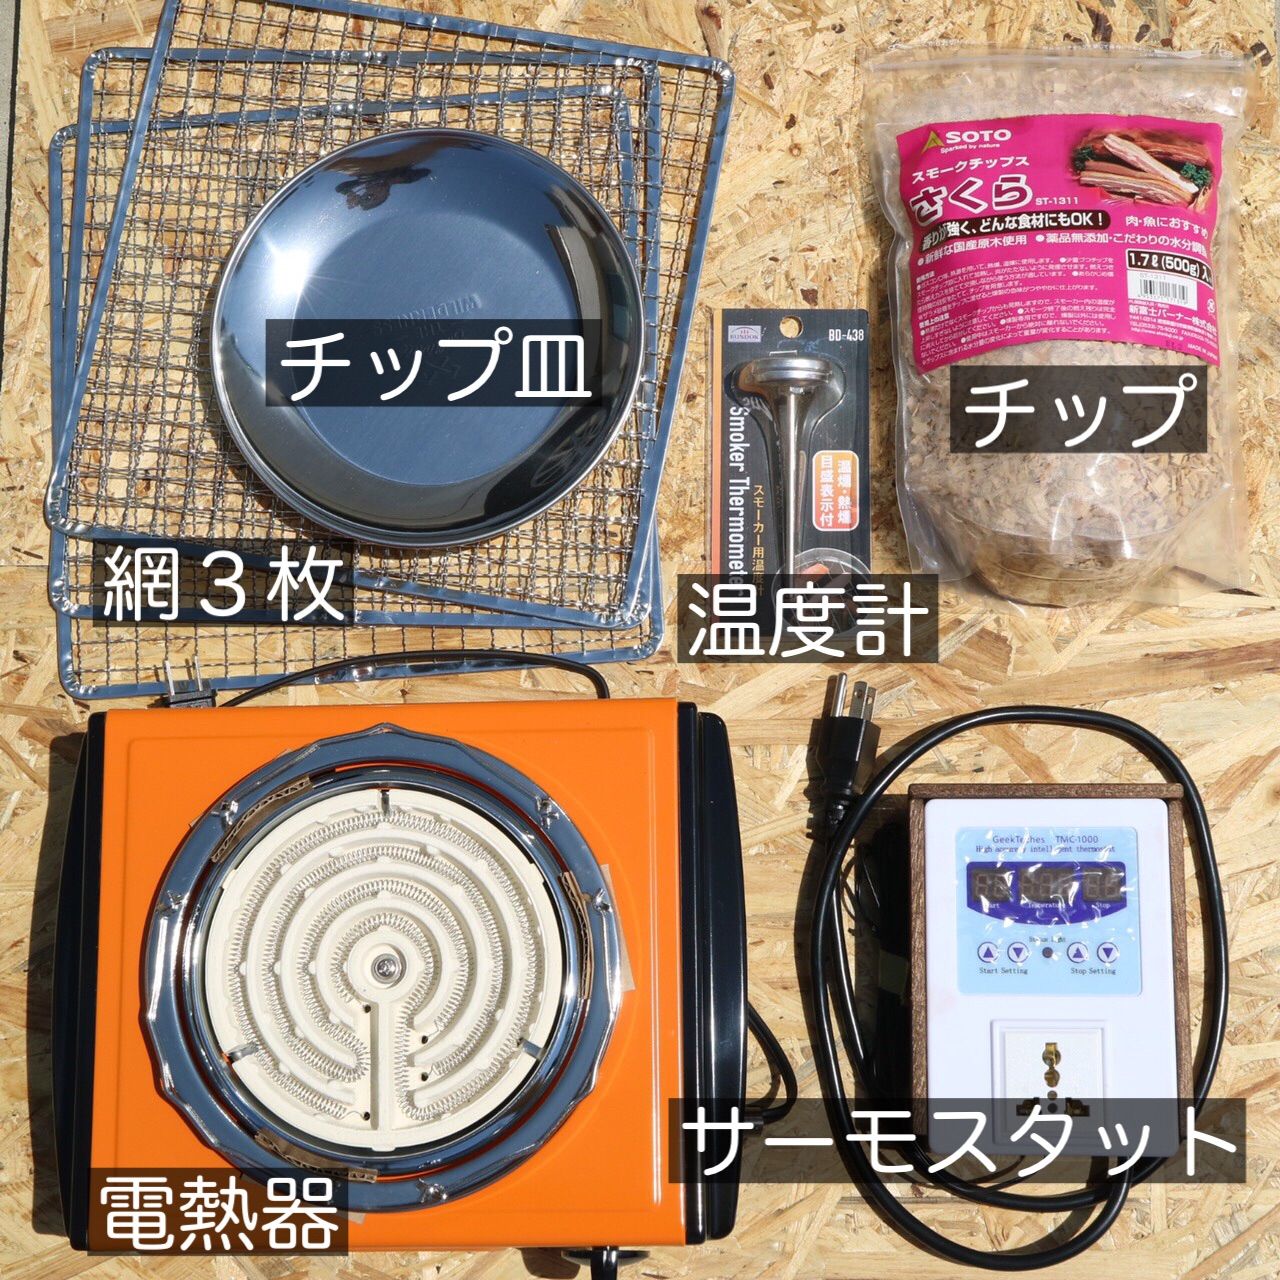 温度管理できる『燻製器』電熱器セット！ - 大阪府の生活雑貨